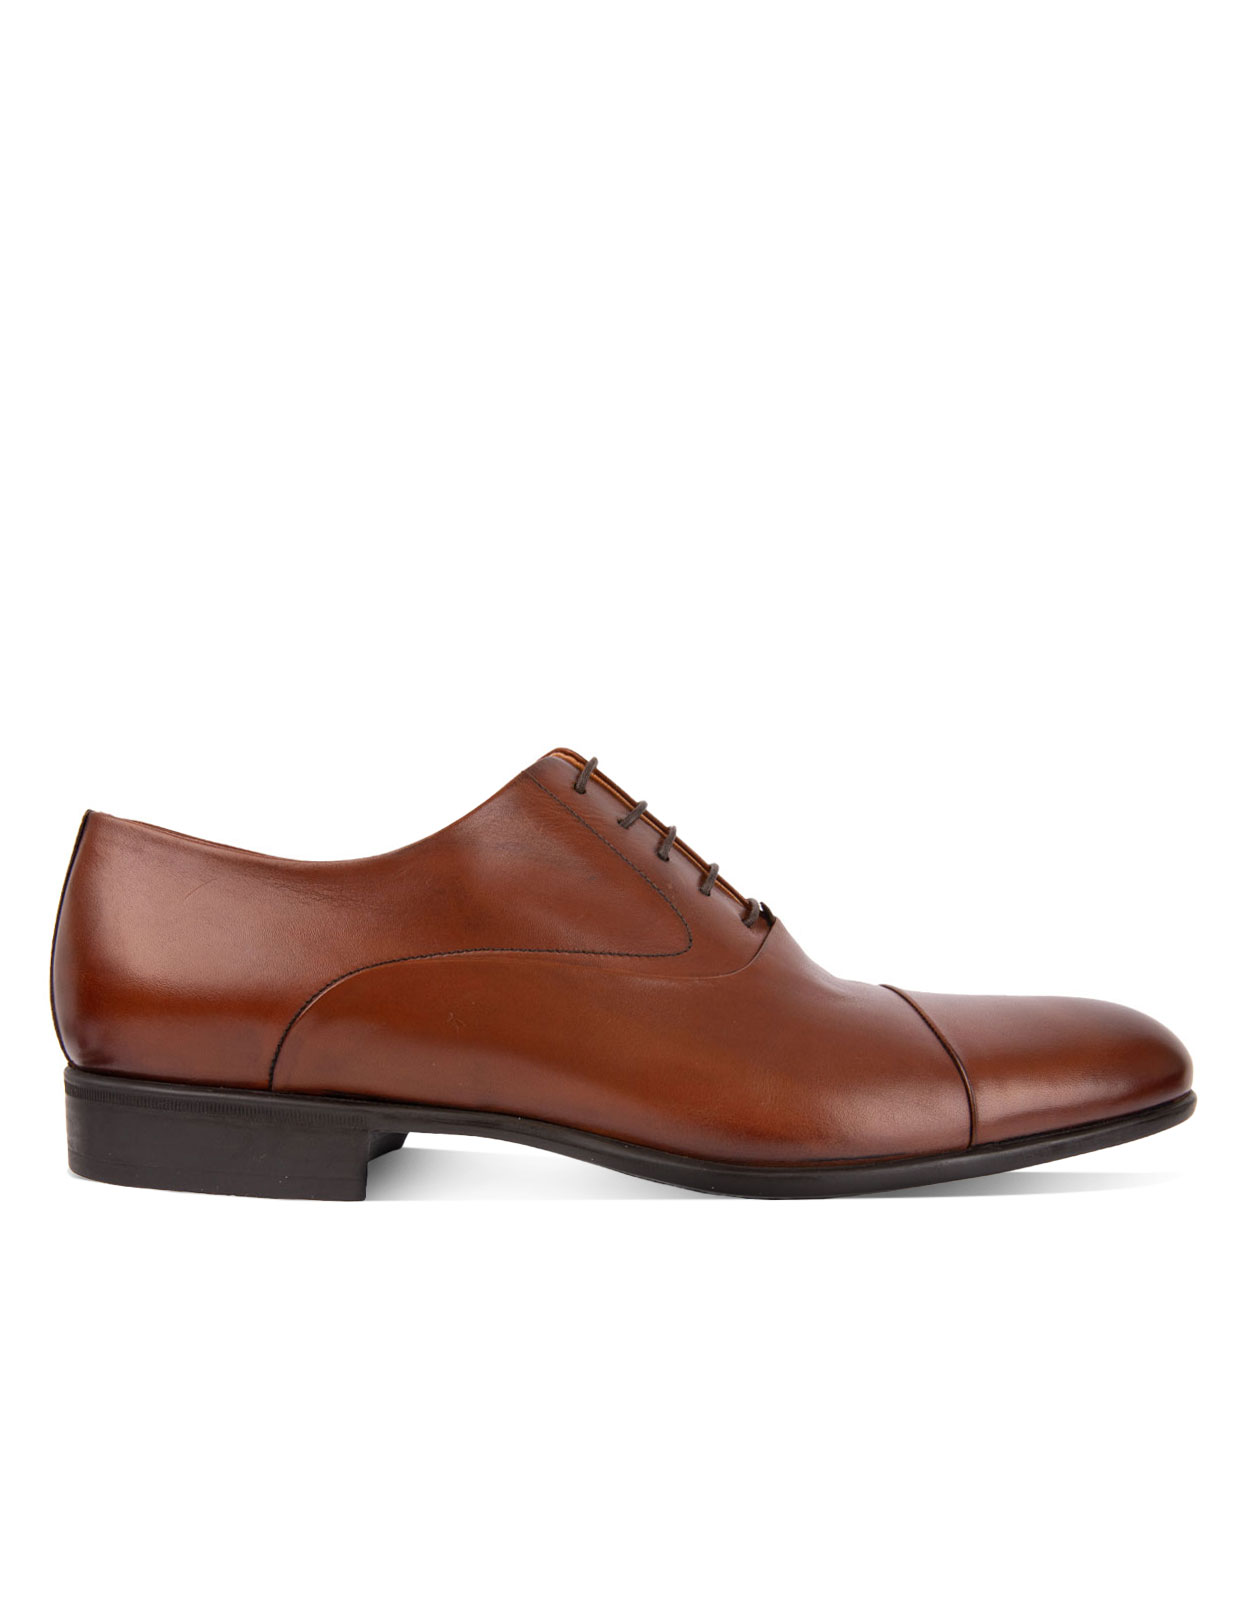 Bruges Oxford Shoe Tan Stl 9.5